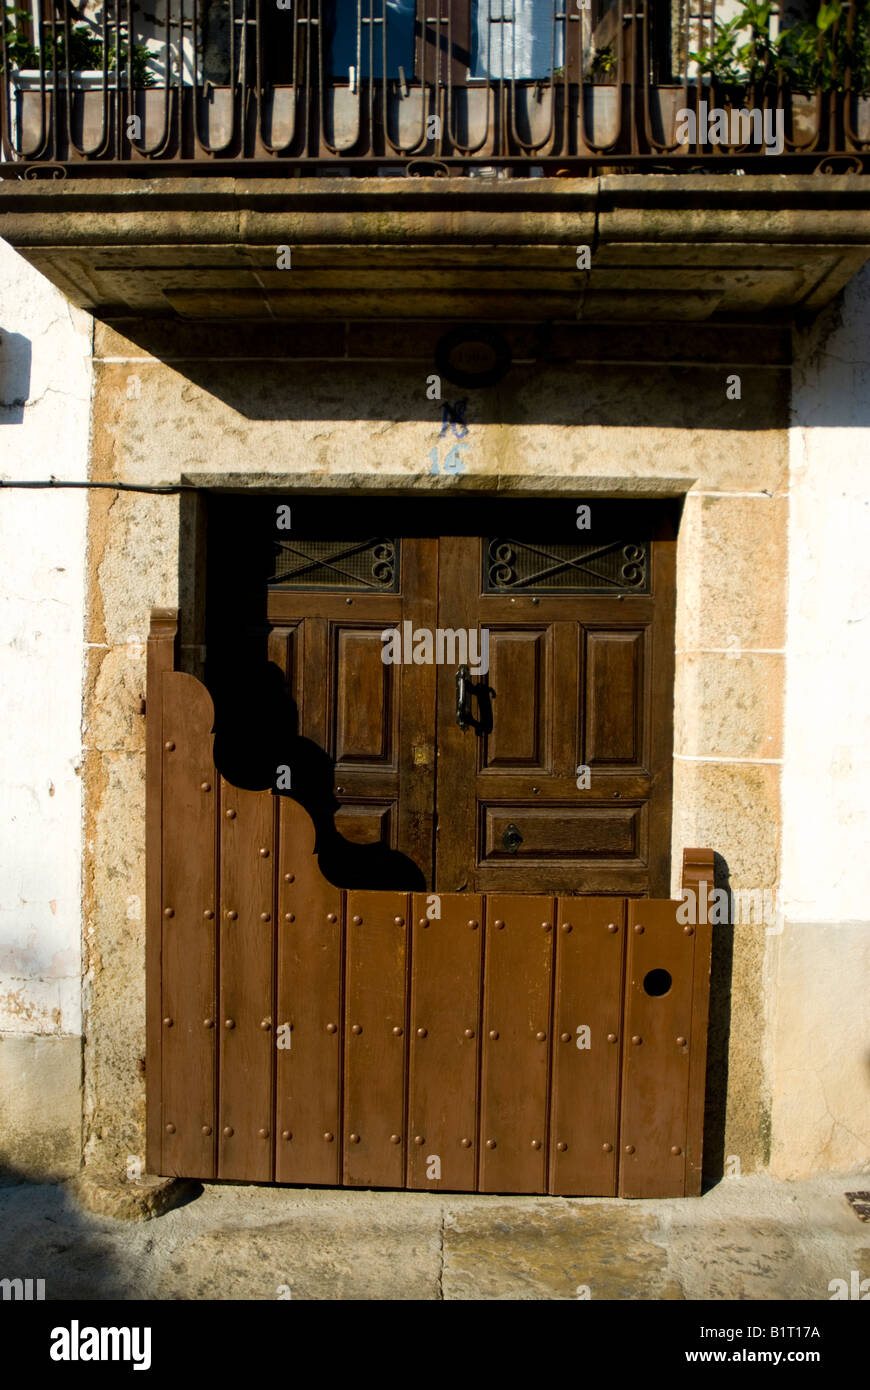 Puerta tradicional llamado batipuerta CANDELARIO Salamanca provincia Castilla y León España región Foto de stock